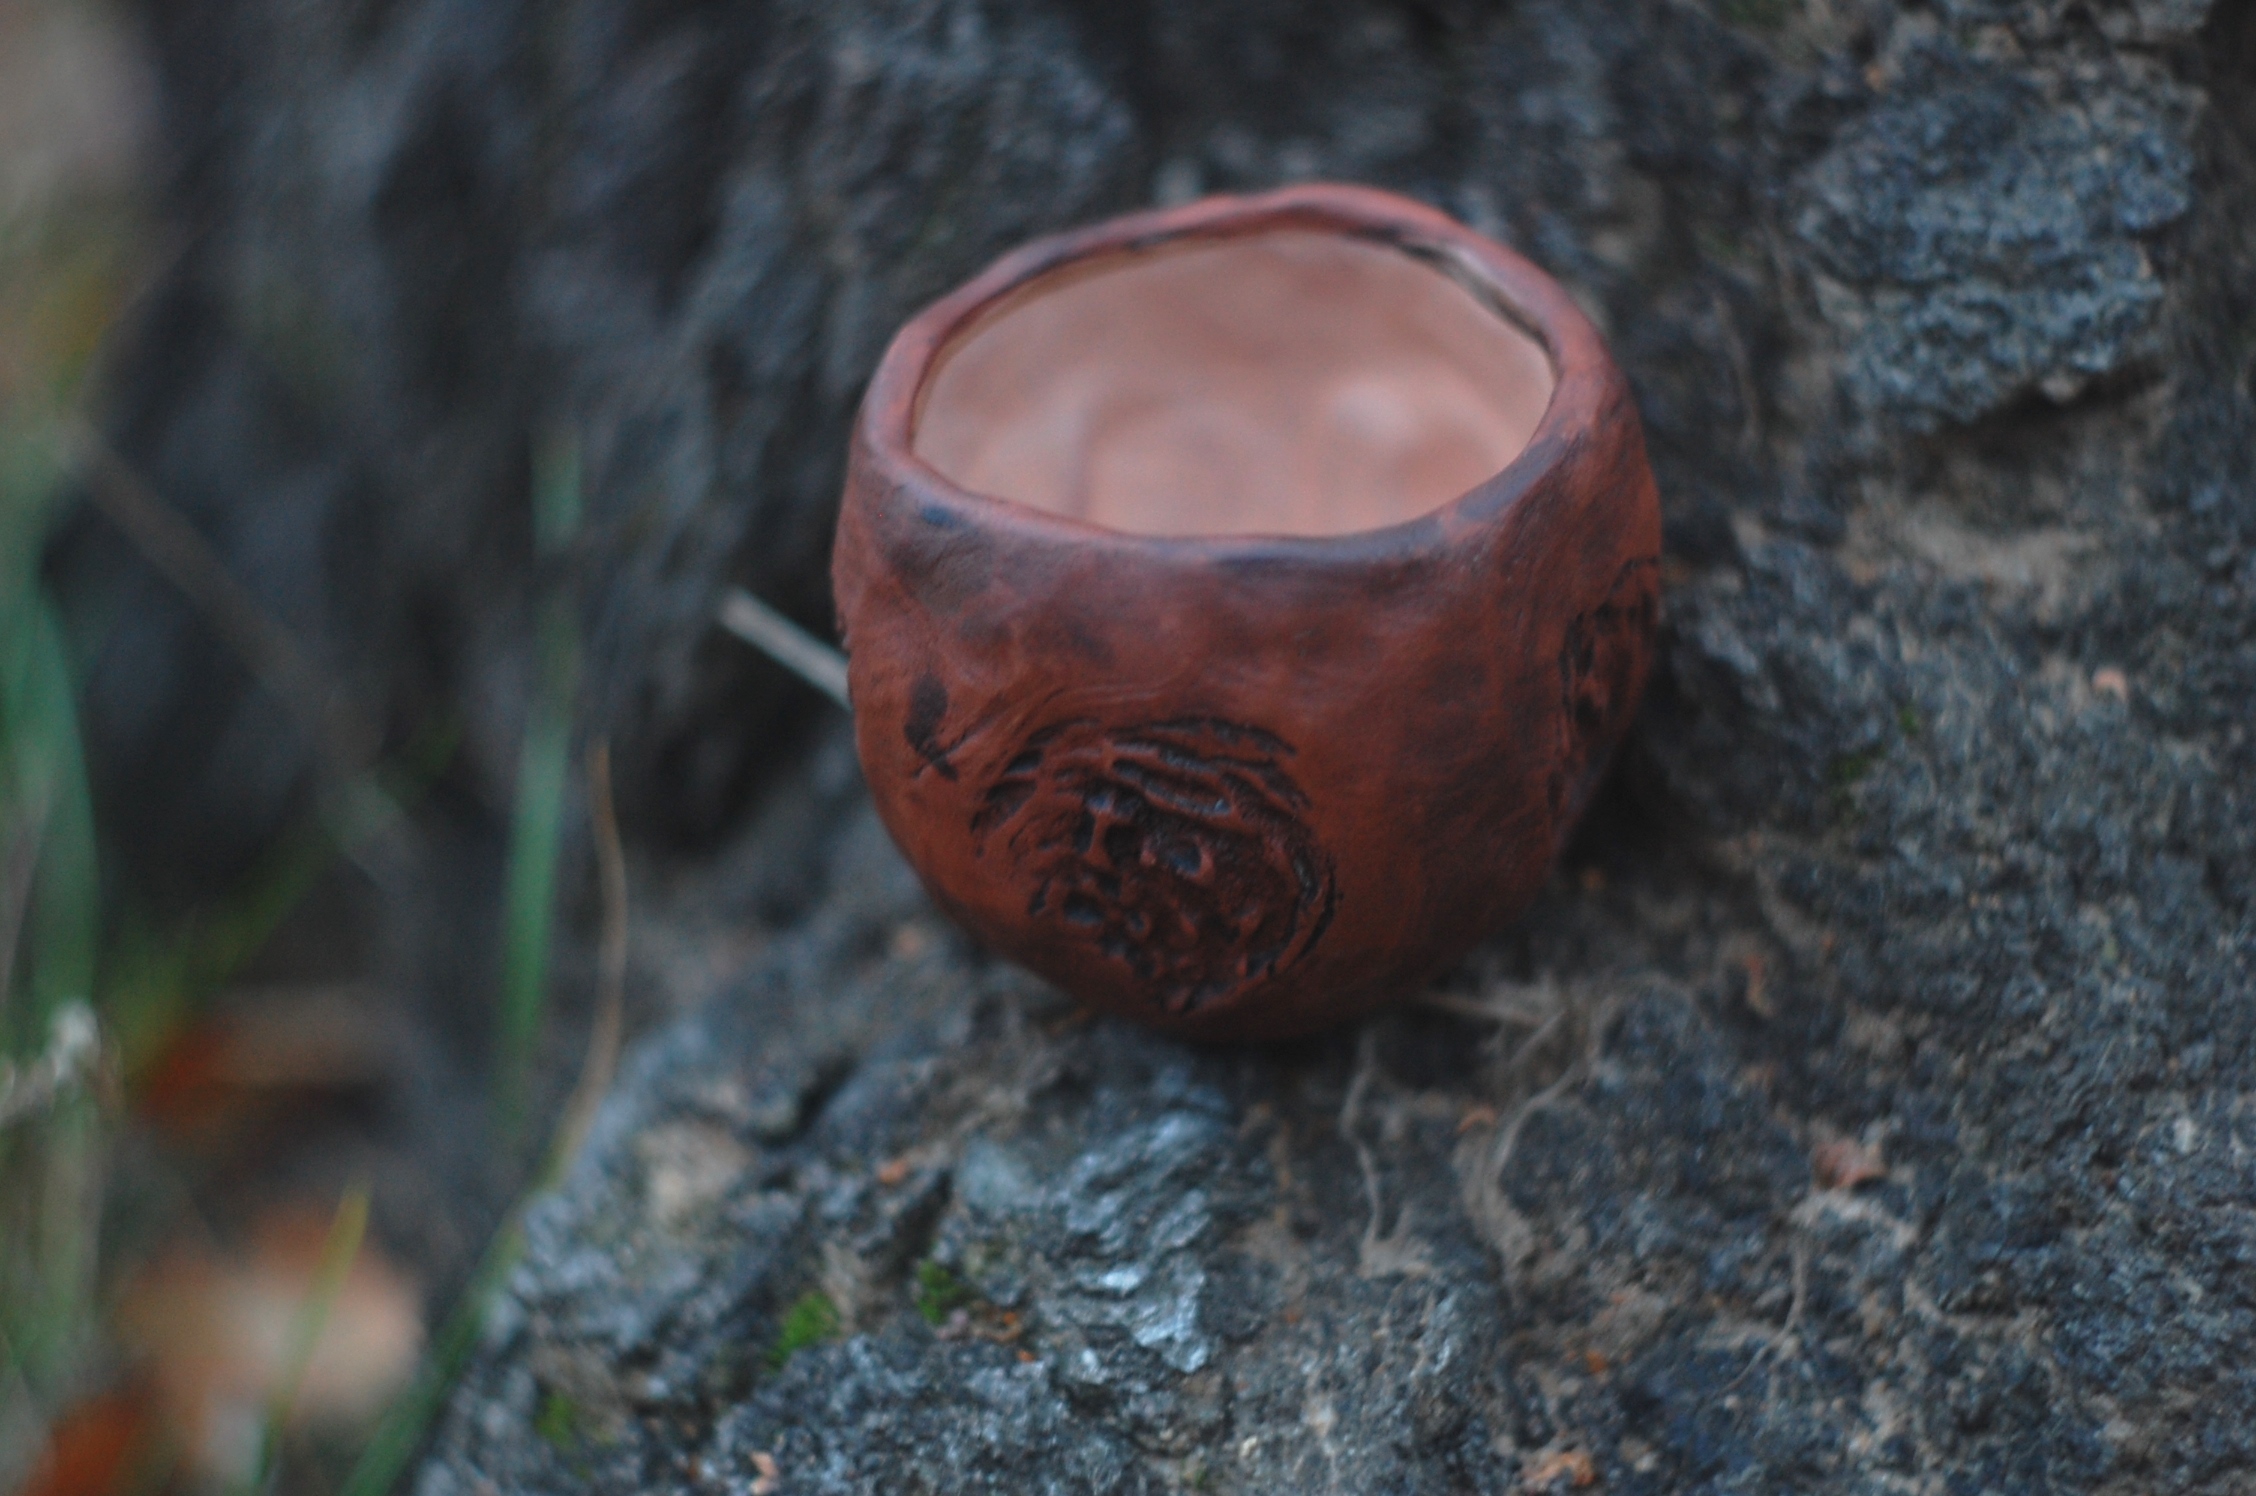 Handmade tea ceremony mug "Peach" ~3.5oz